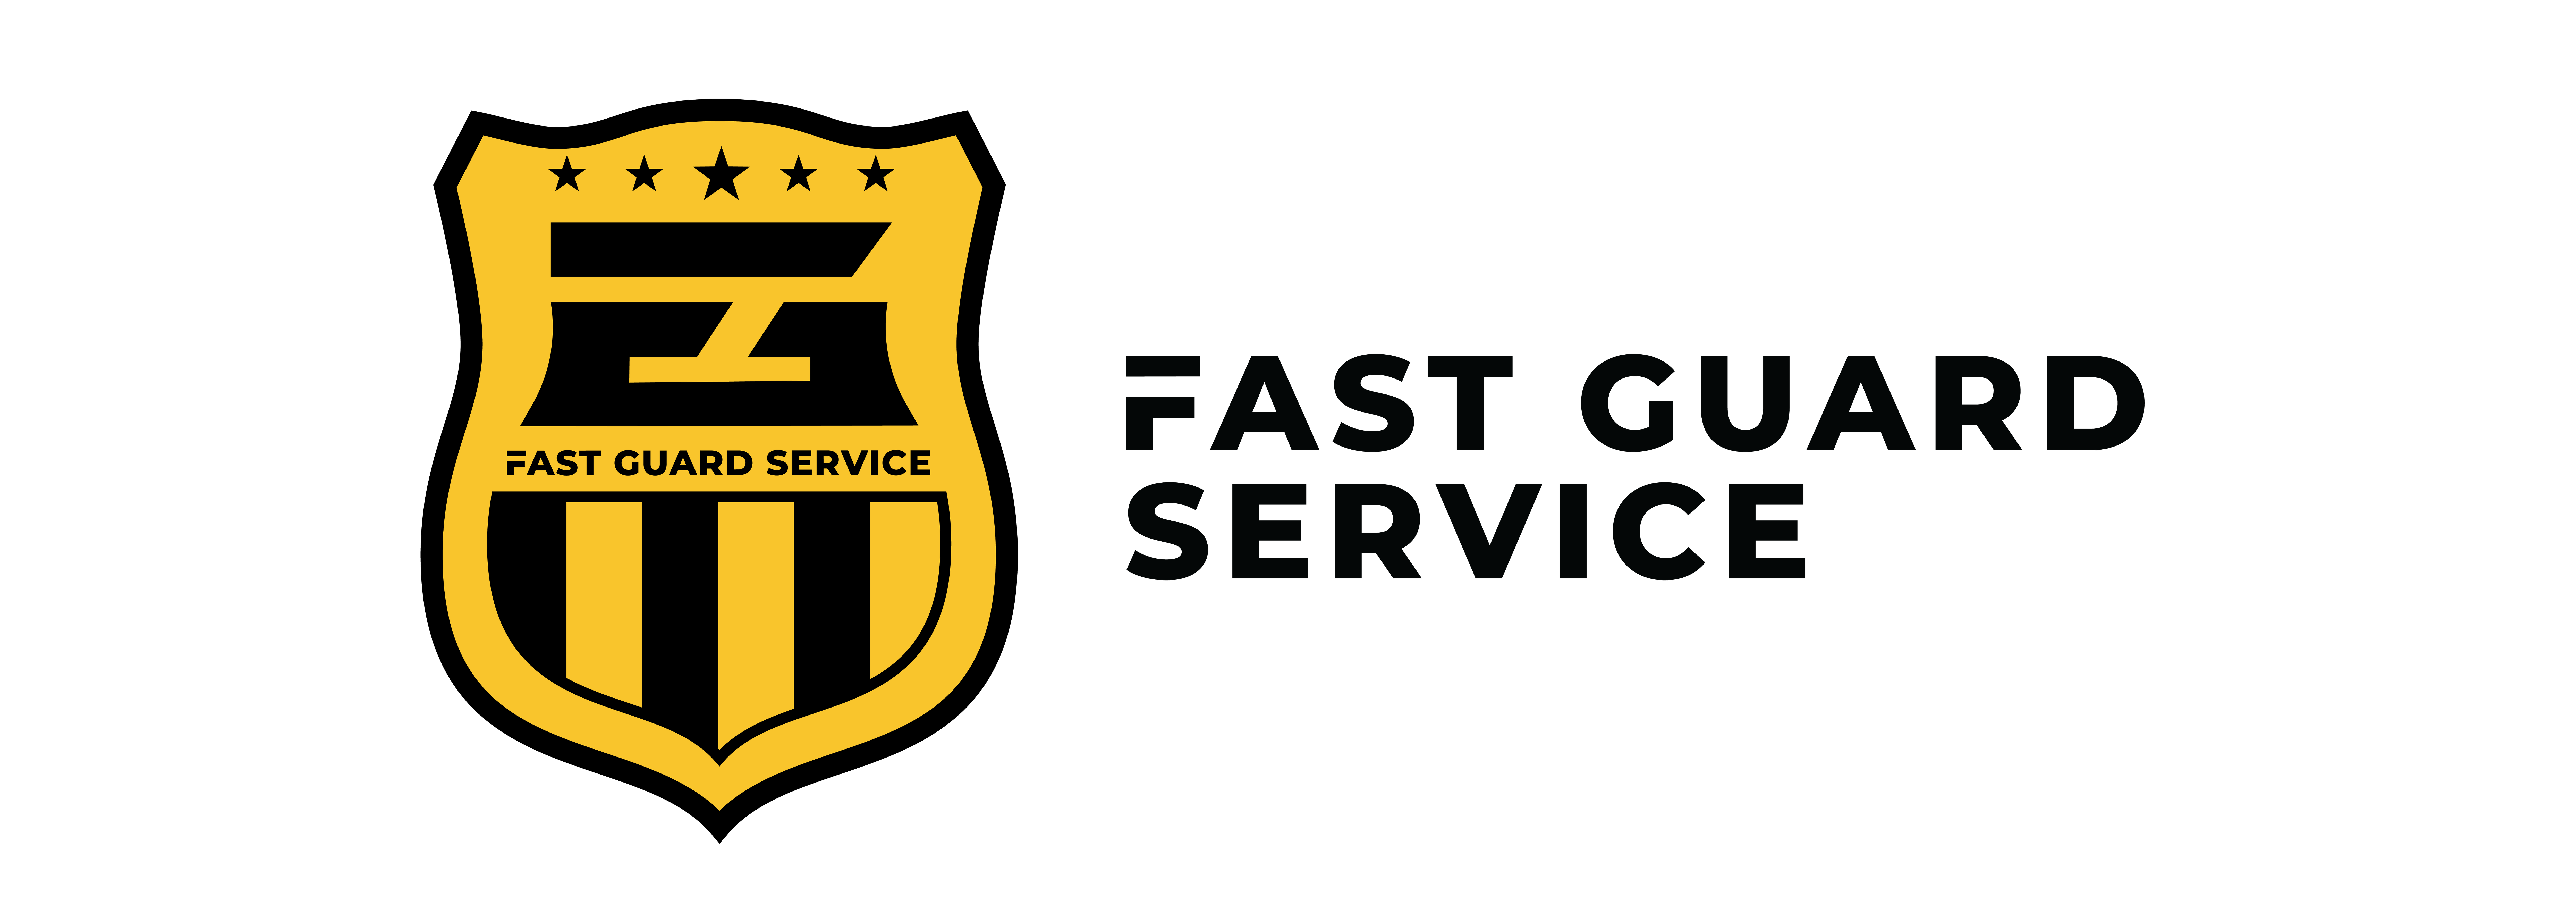 Fast Guard Service